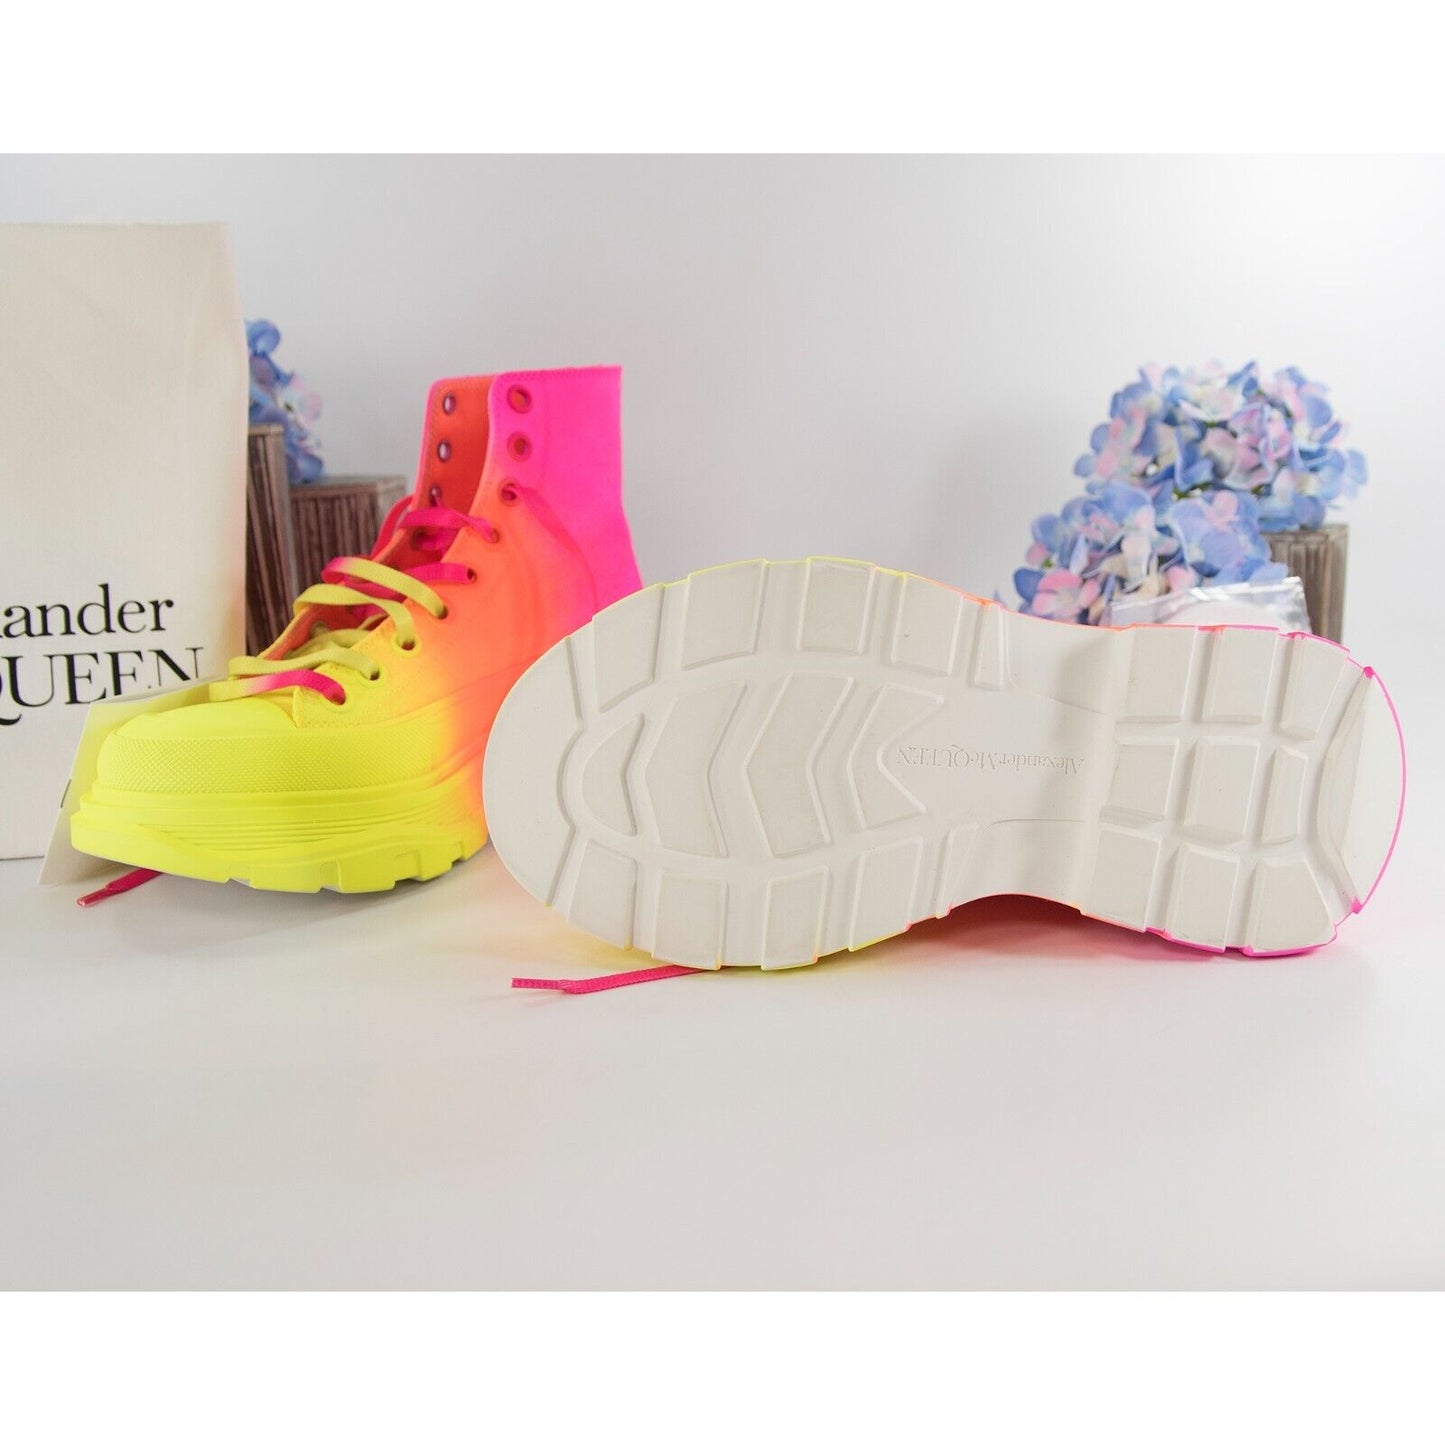 Alexander McQueen Lt Edition Tread Slick Neon Coated High Top Sneakers 37 NIB